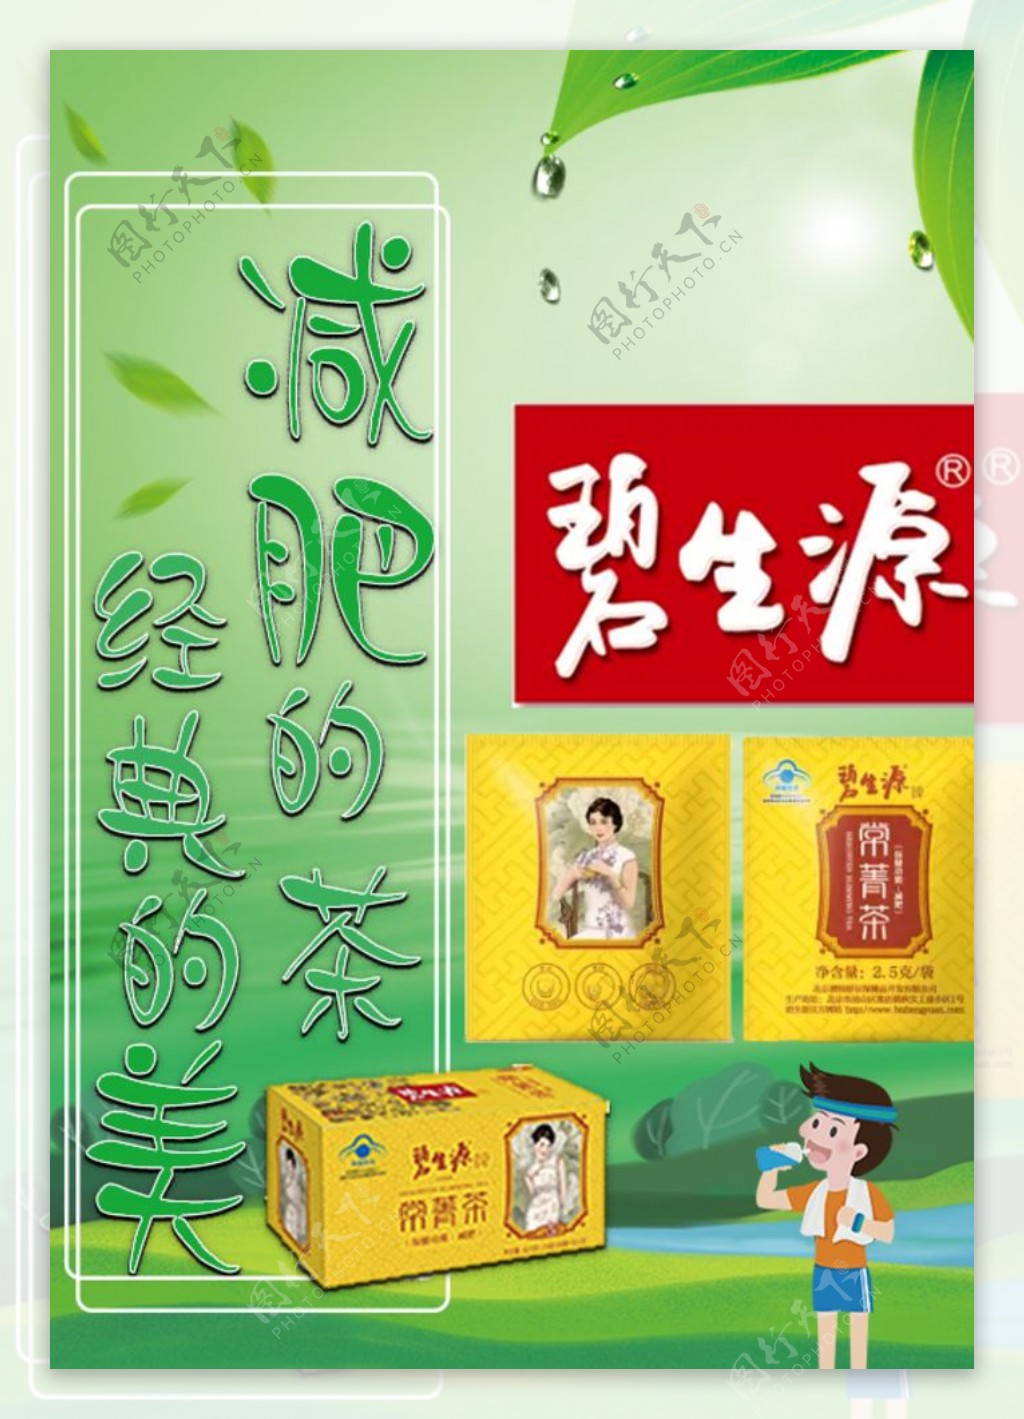 仙念阁常清茶肠清茶芦荟茶一步到位常润茶便立通润通茶袋泡茶15袋-Taobao